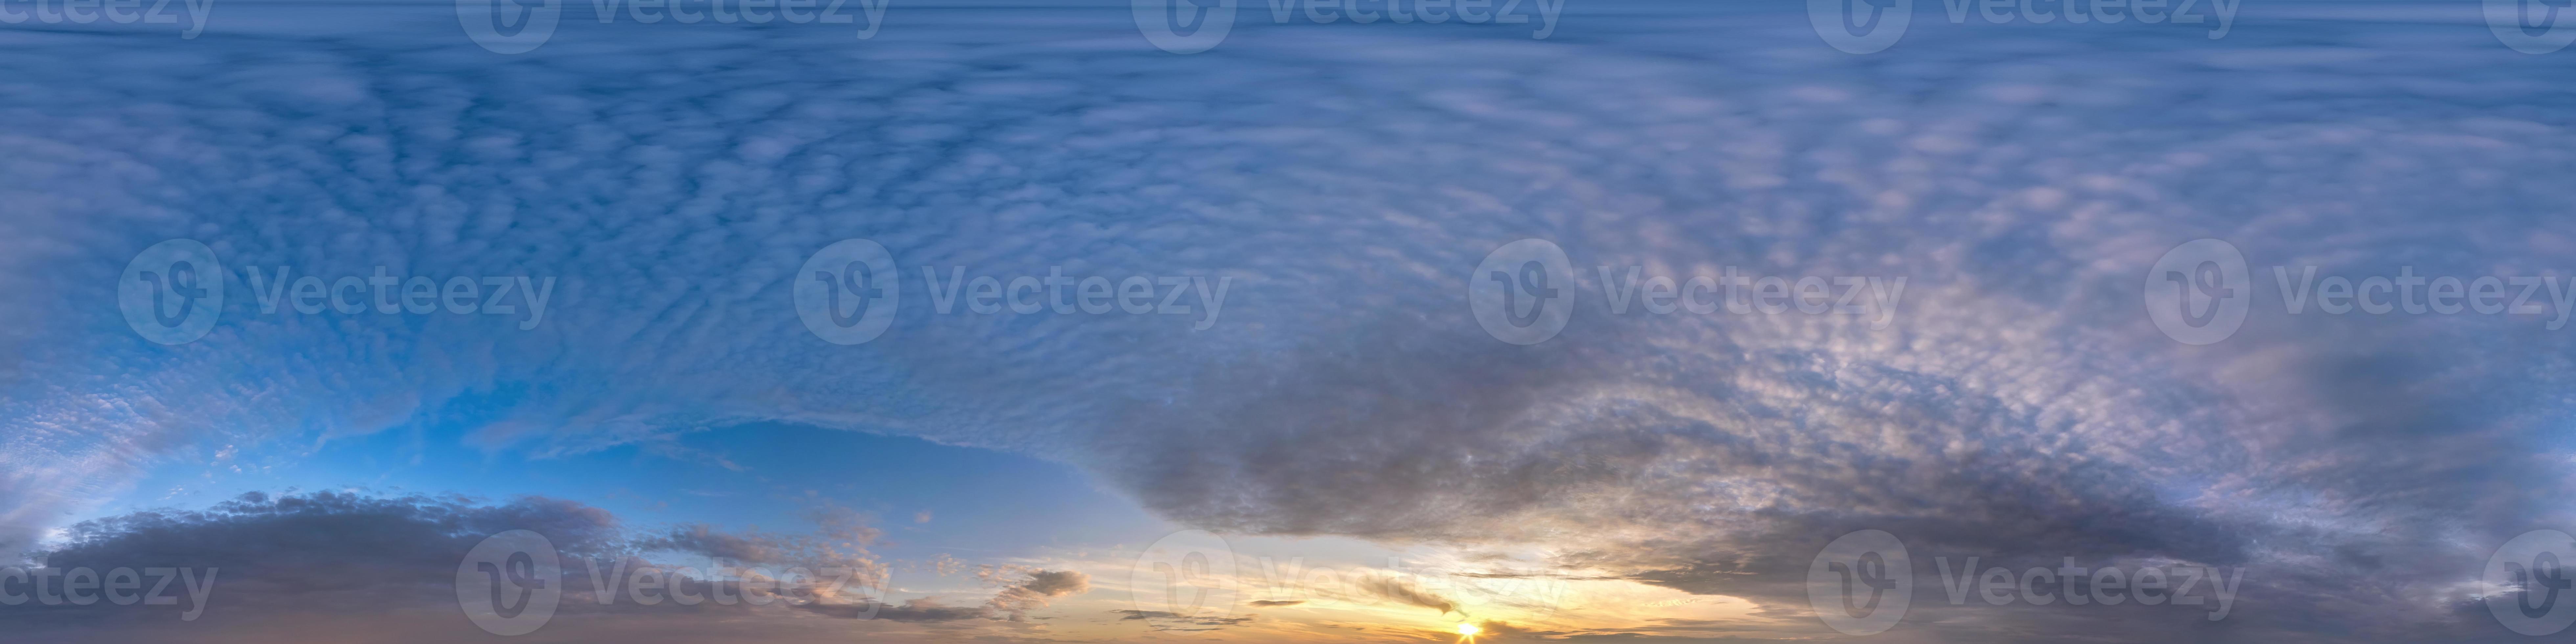 Panorama Hdr 360 Do Céu Azul Com Lindas Nuvens Brancas Em Projeção